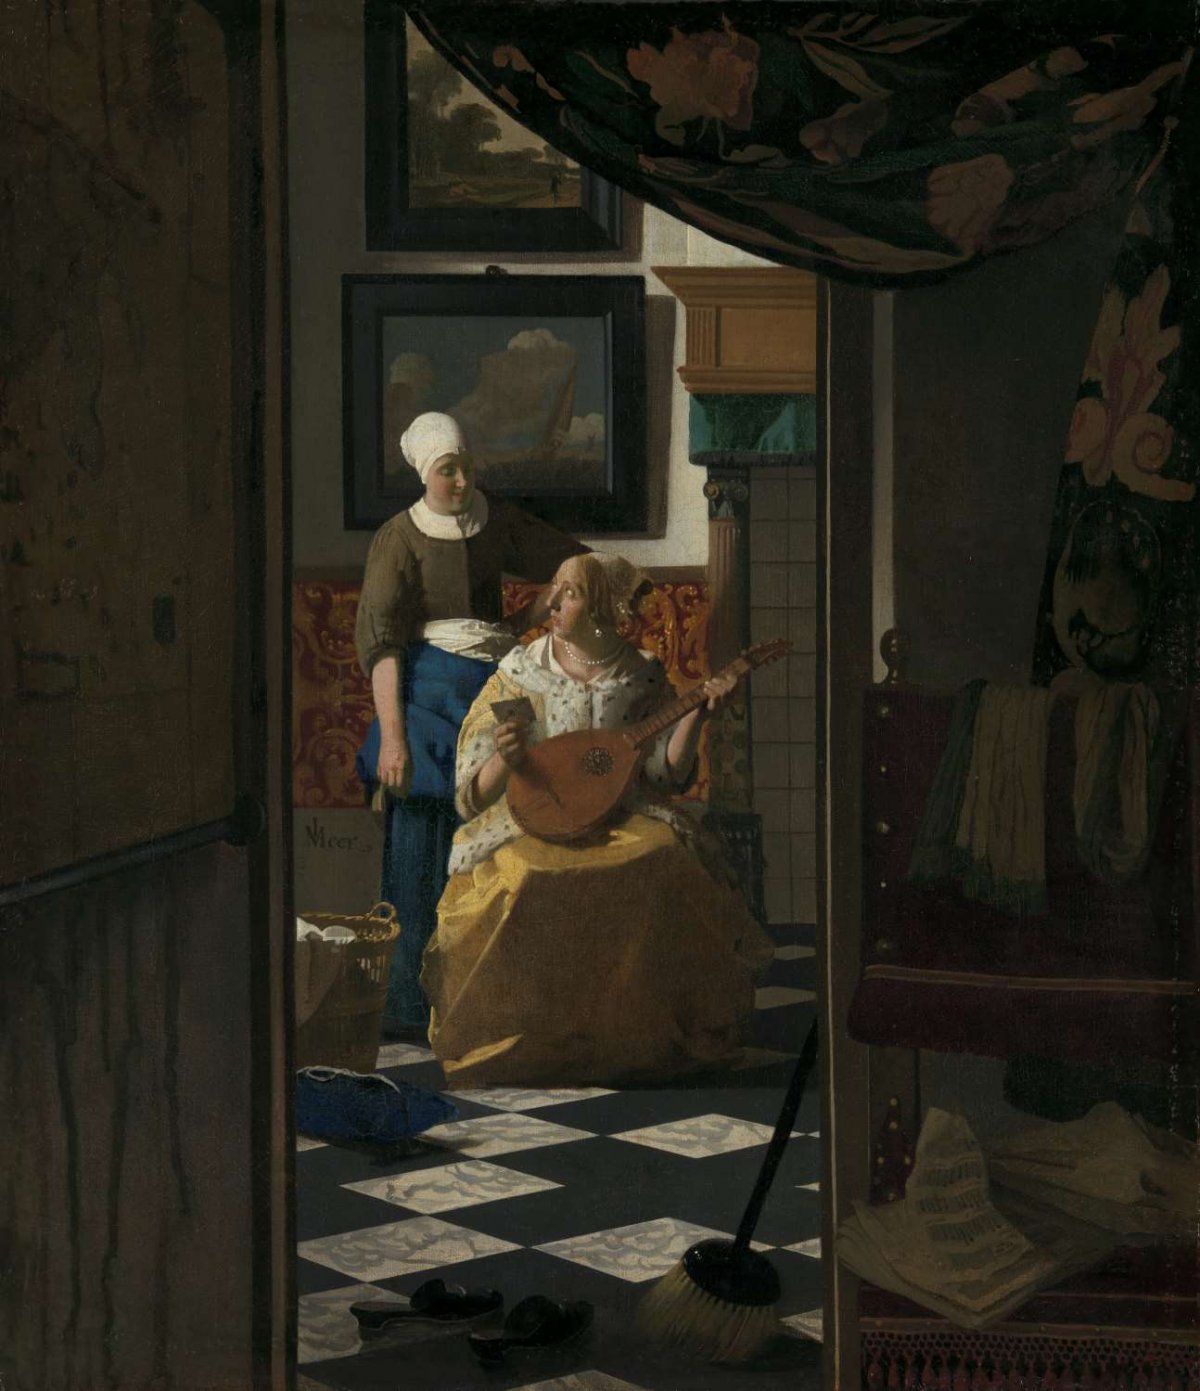 The Love Letter, Johannes Vermeer, c. 1669 - c. 1670